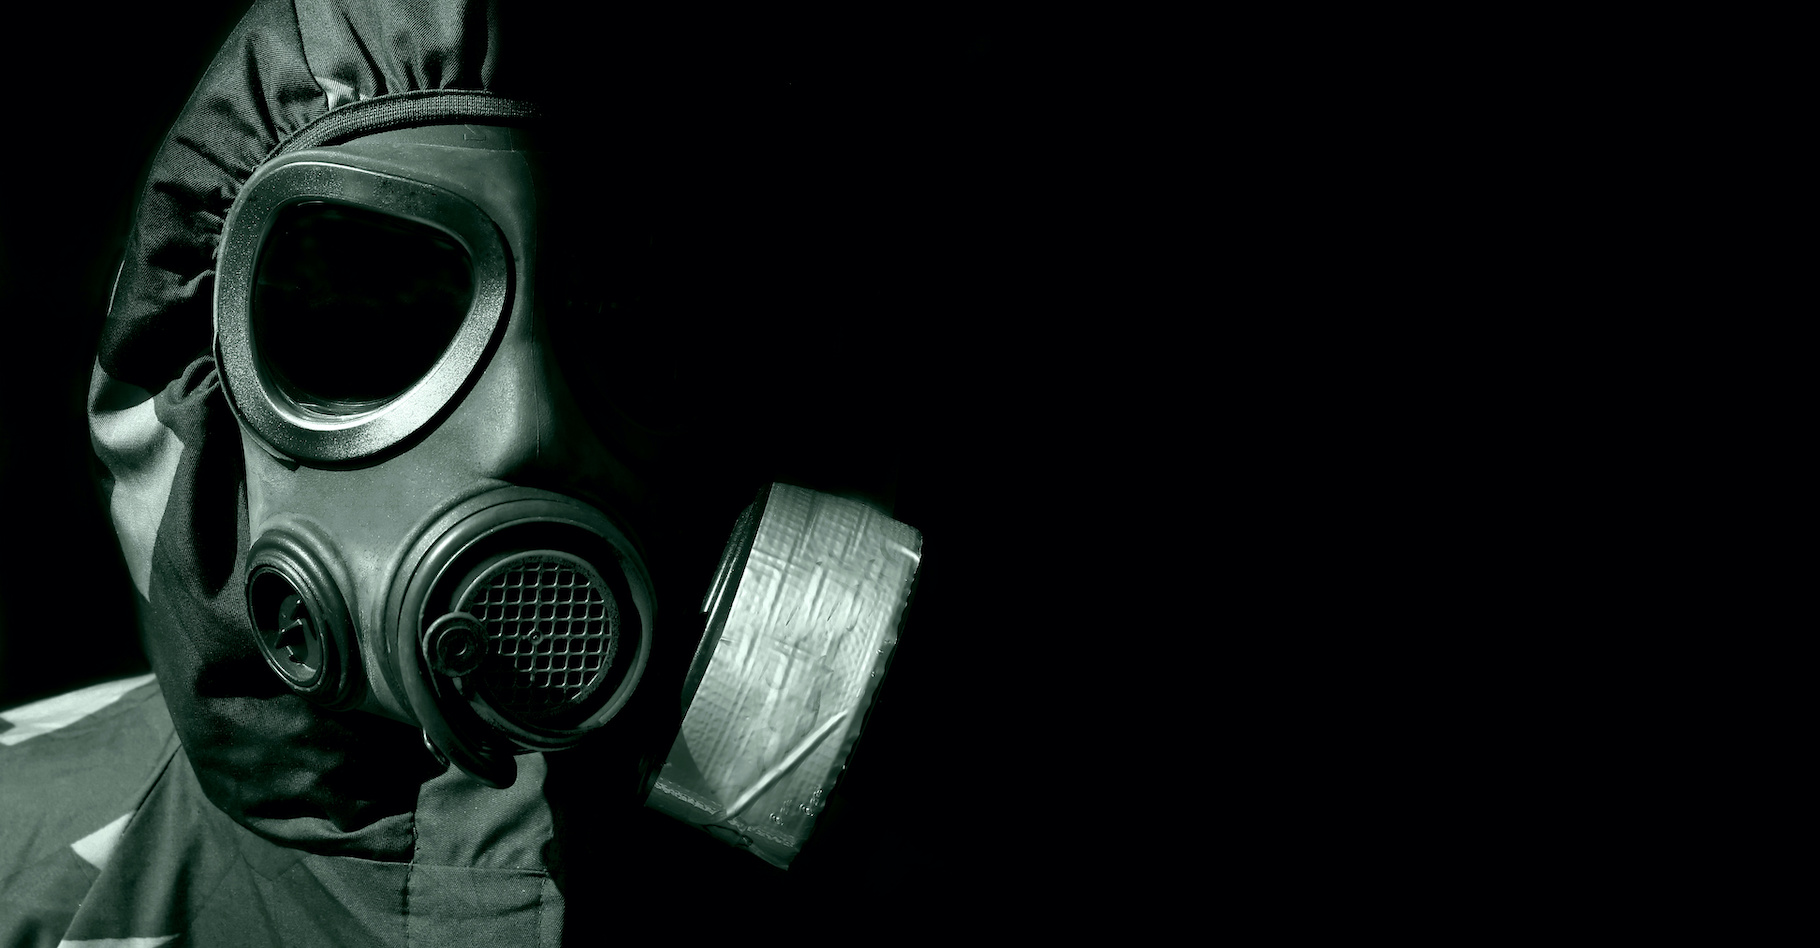 Alors que certains développaient des armes chimiques, d’autres travaillaient&nbsp;à la mise au point d’équipements permettant de s’en protéger. Comme les masques à gaz. © Andreas Gradin, Adobe Stock